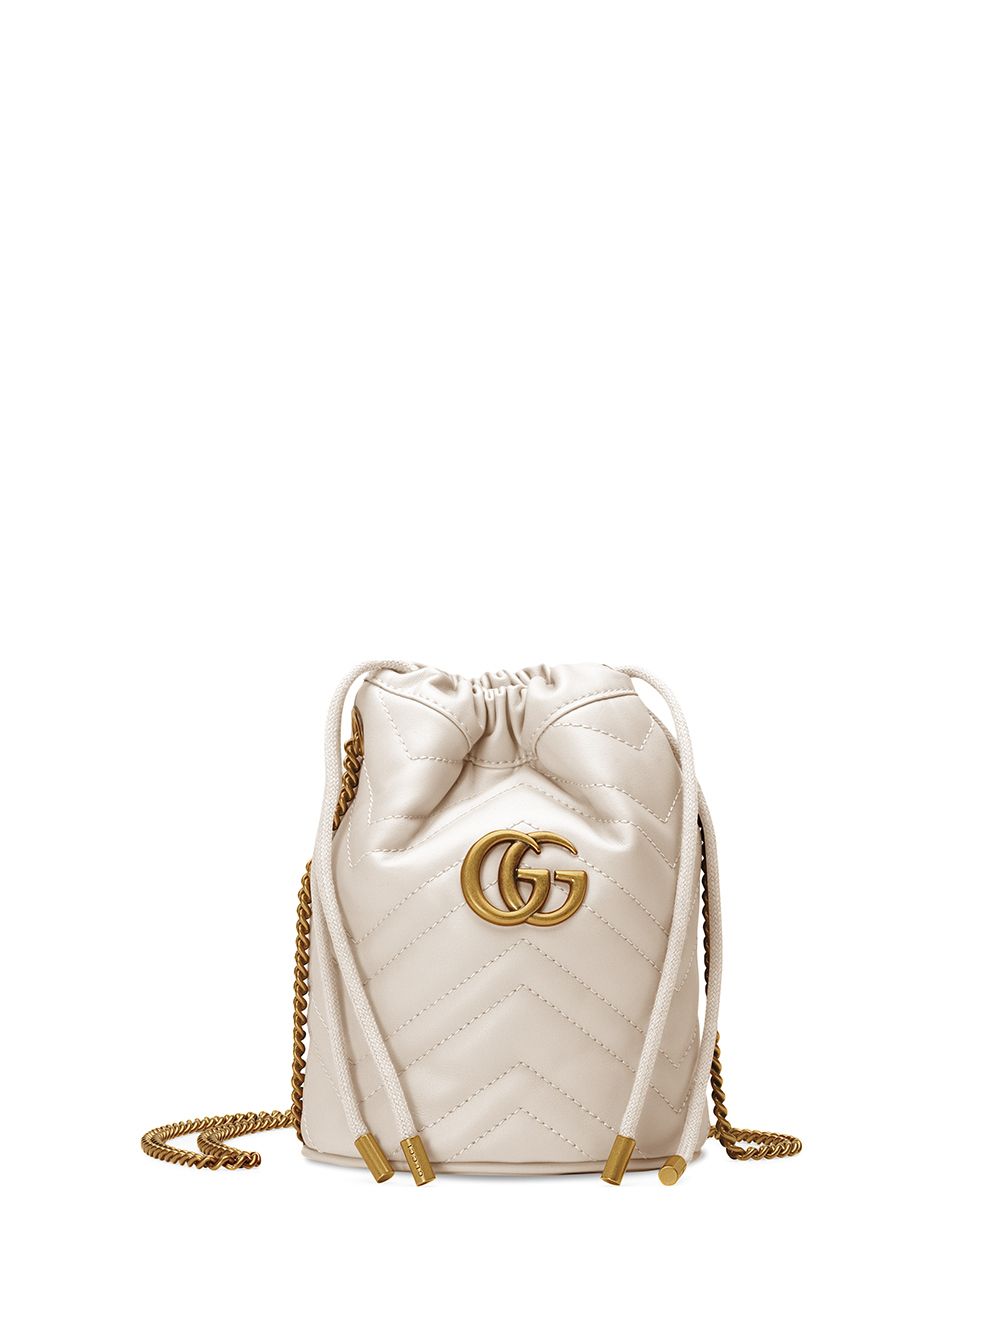 фото Gucci маленькая сумка-ведро gg marmont